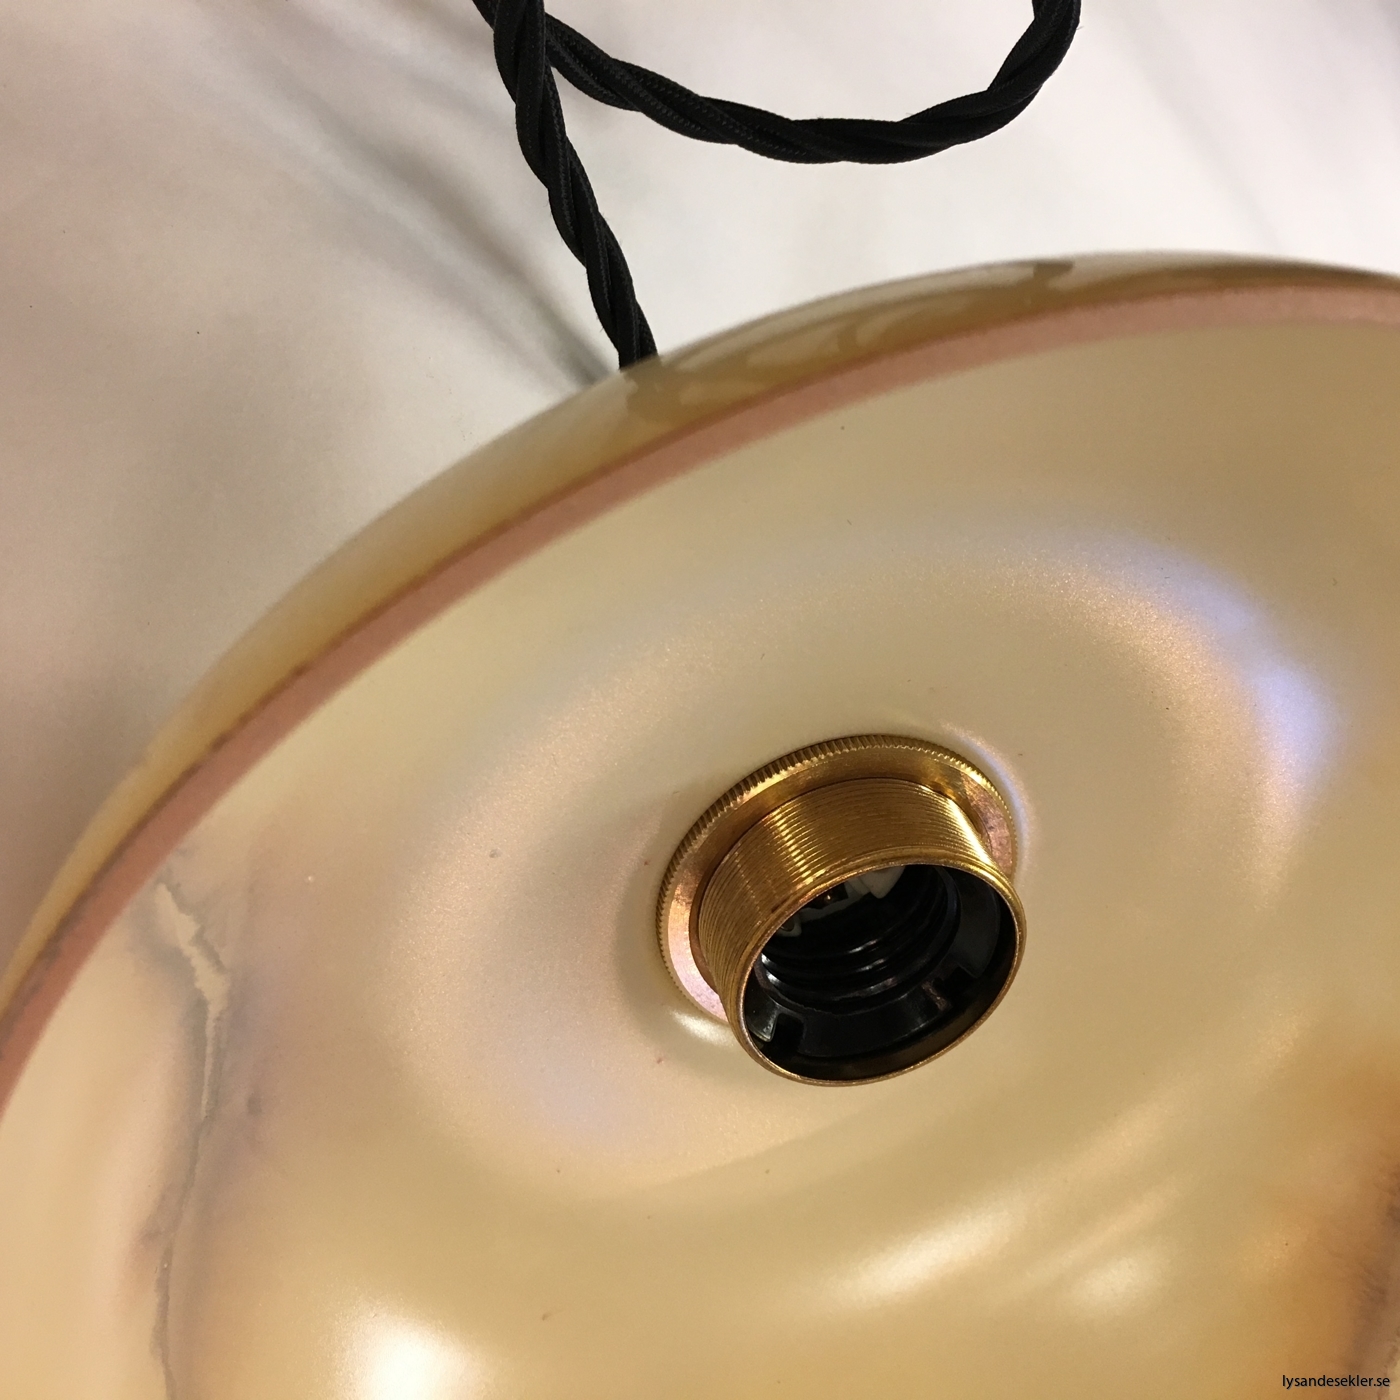 tygsladd textilssladd lampupphäng med 2 ringar utan skruvar för skärm eller glödlampa (7)